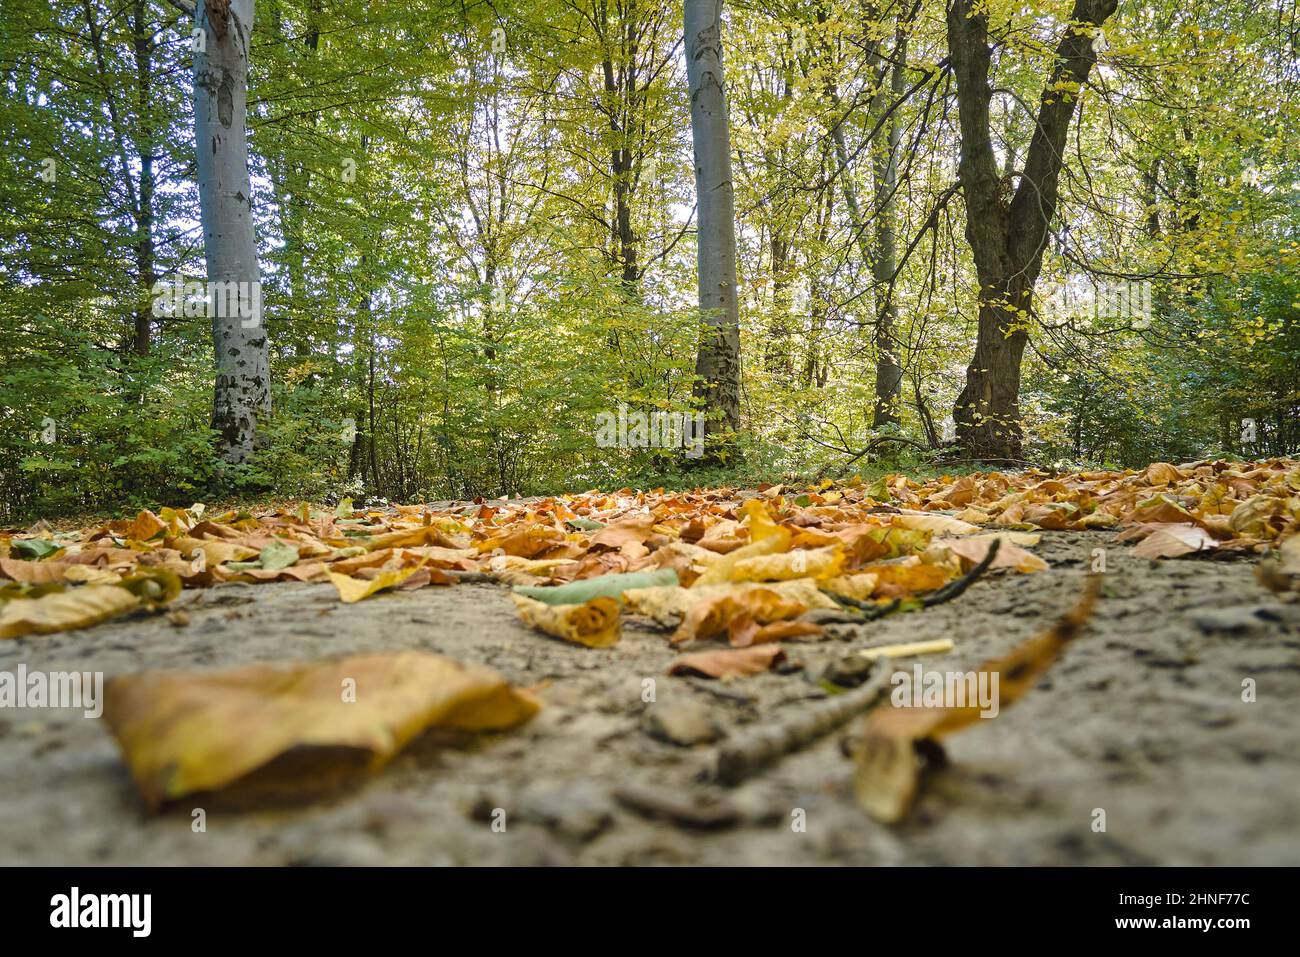 Wunderschöne Landschaft aus hellgrünen Wäldern mit üppigen Bäumen und heruntergefallenen trockenen Blättern, die den Boden im Herbstmorgen bedecken. Schöner wilder Wald im Morgengrauen. Stockfoto